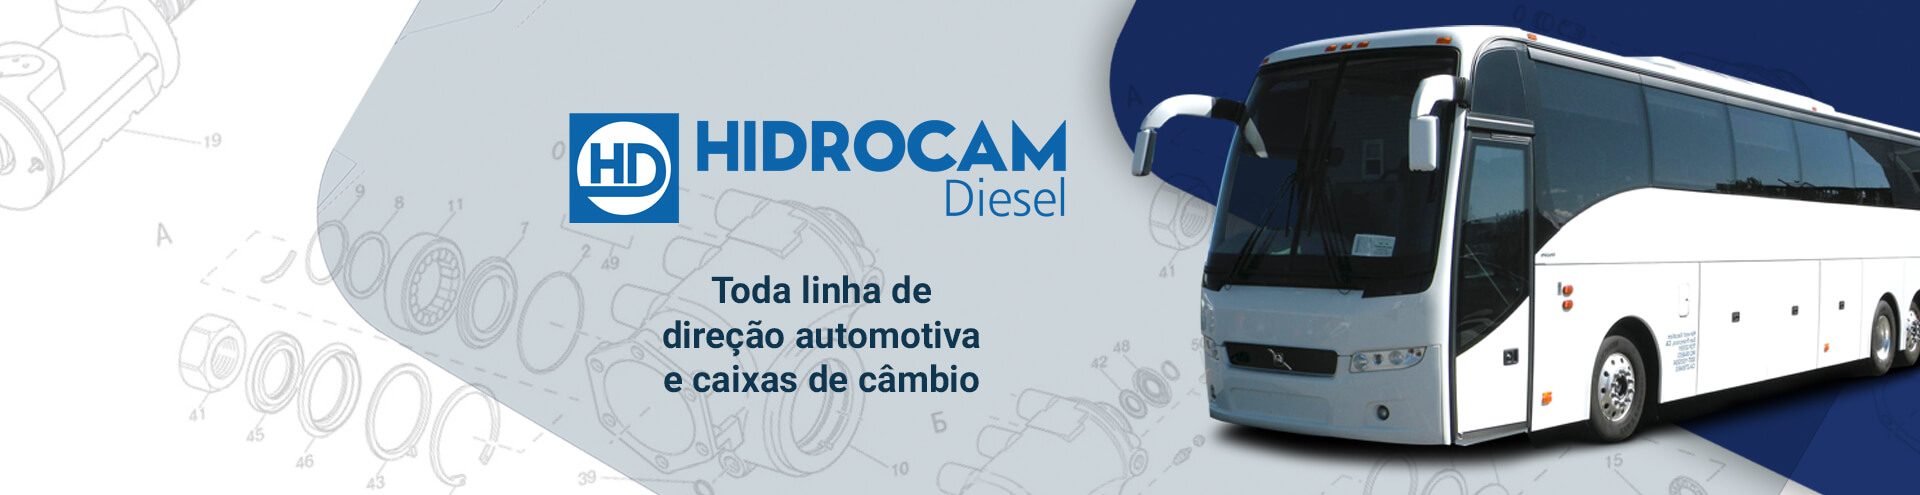 site-hidrocam-diesel-nos